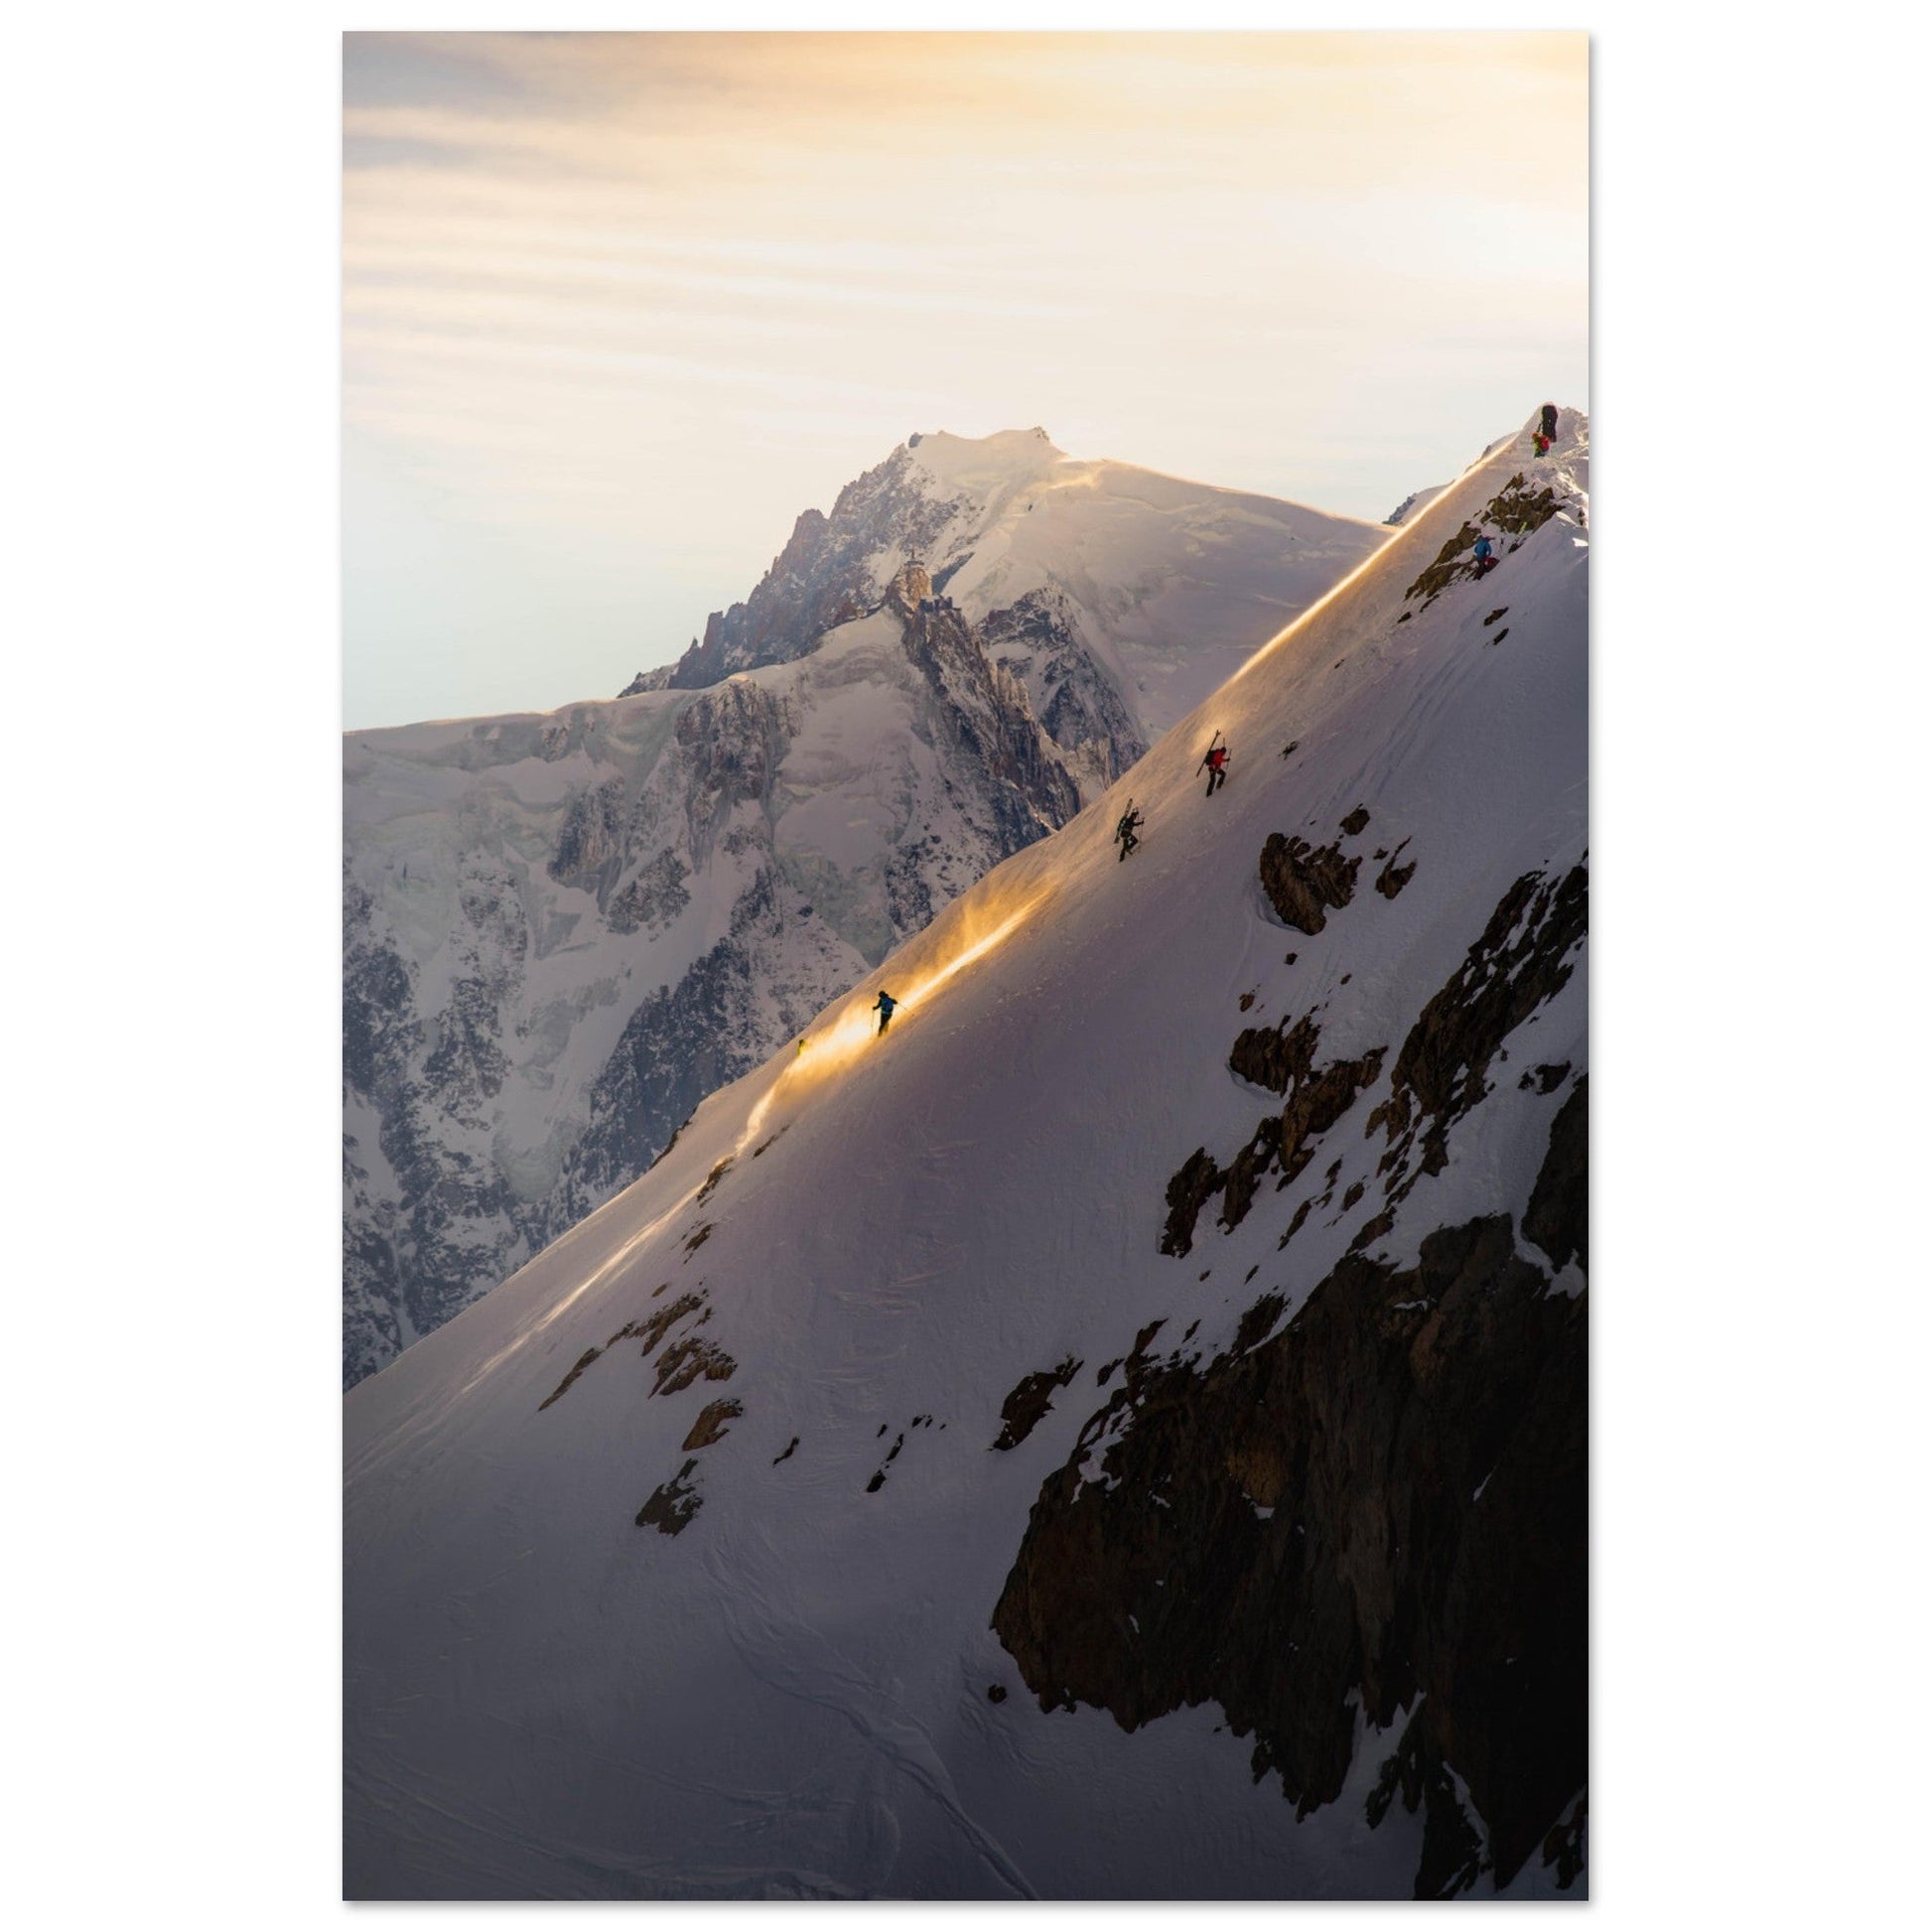 Vente Photo de ski de rando sur l'Aiguille Croche face au Mont-Blanc - Tableau photo alu montagne